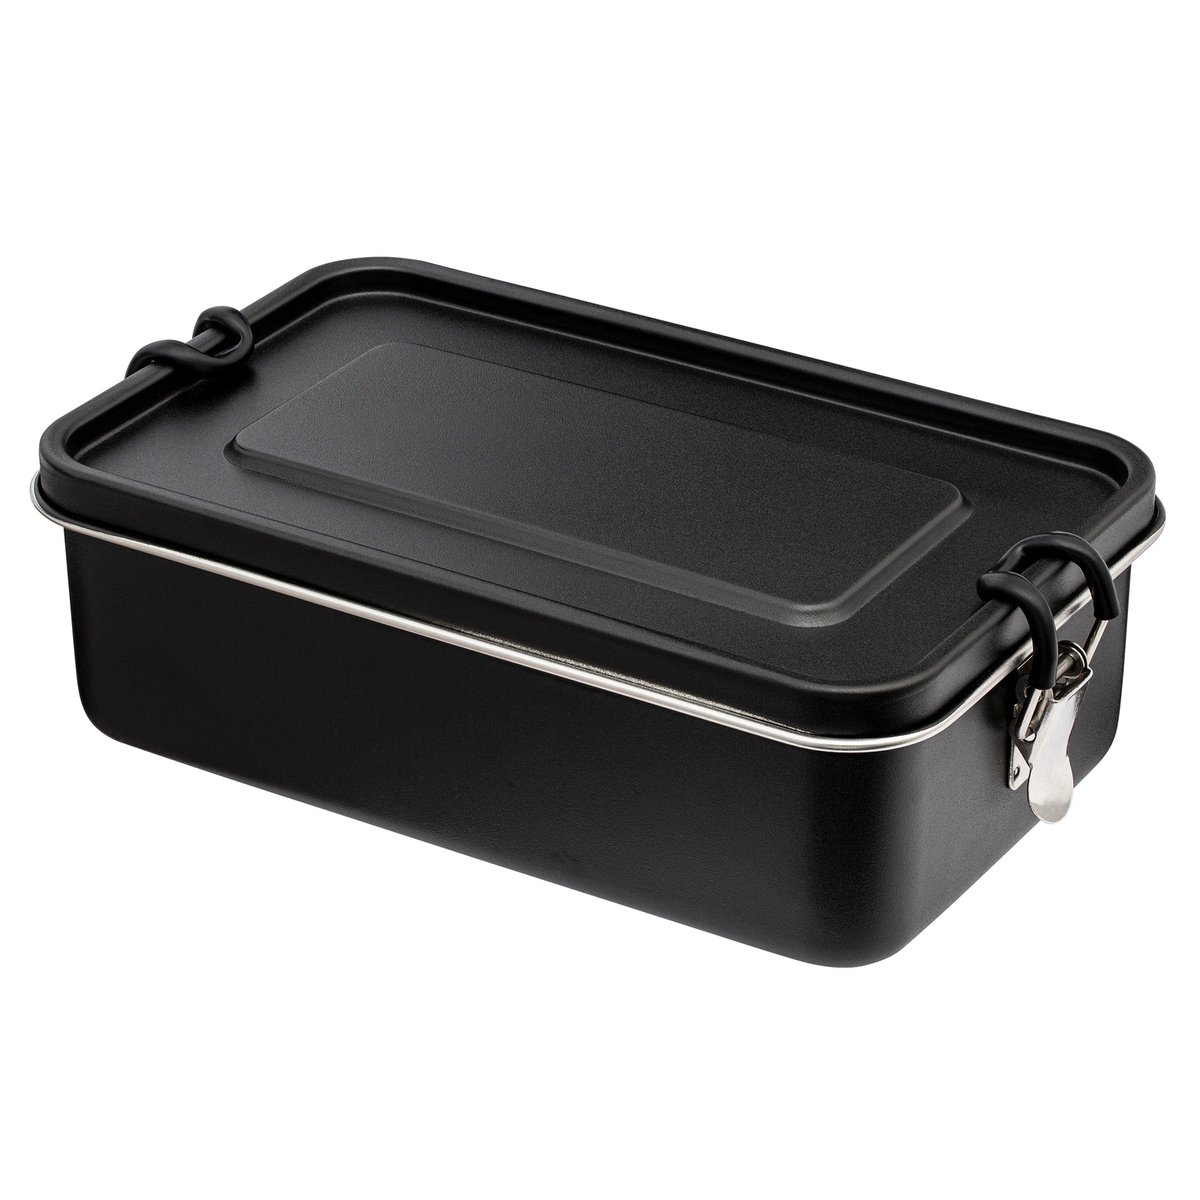  Lékué Lunch Box, 19x10x11 cm, Black : Everything Else